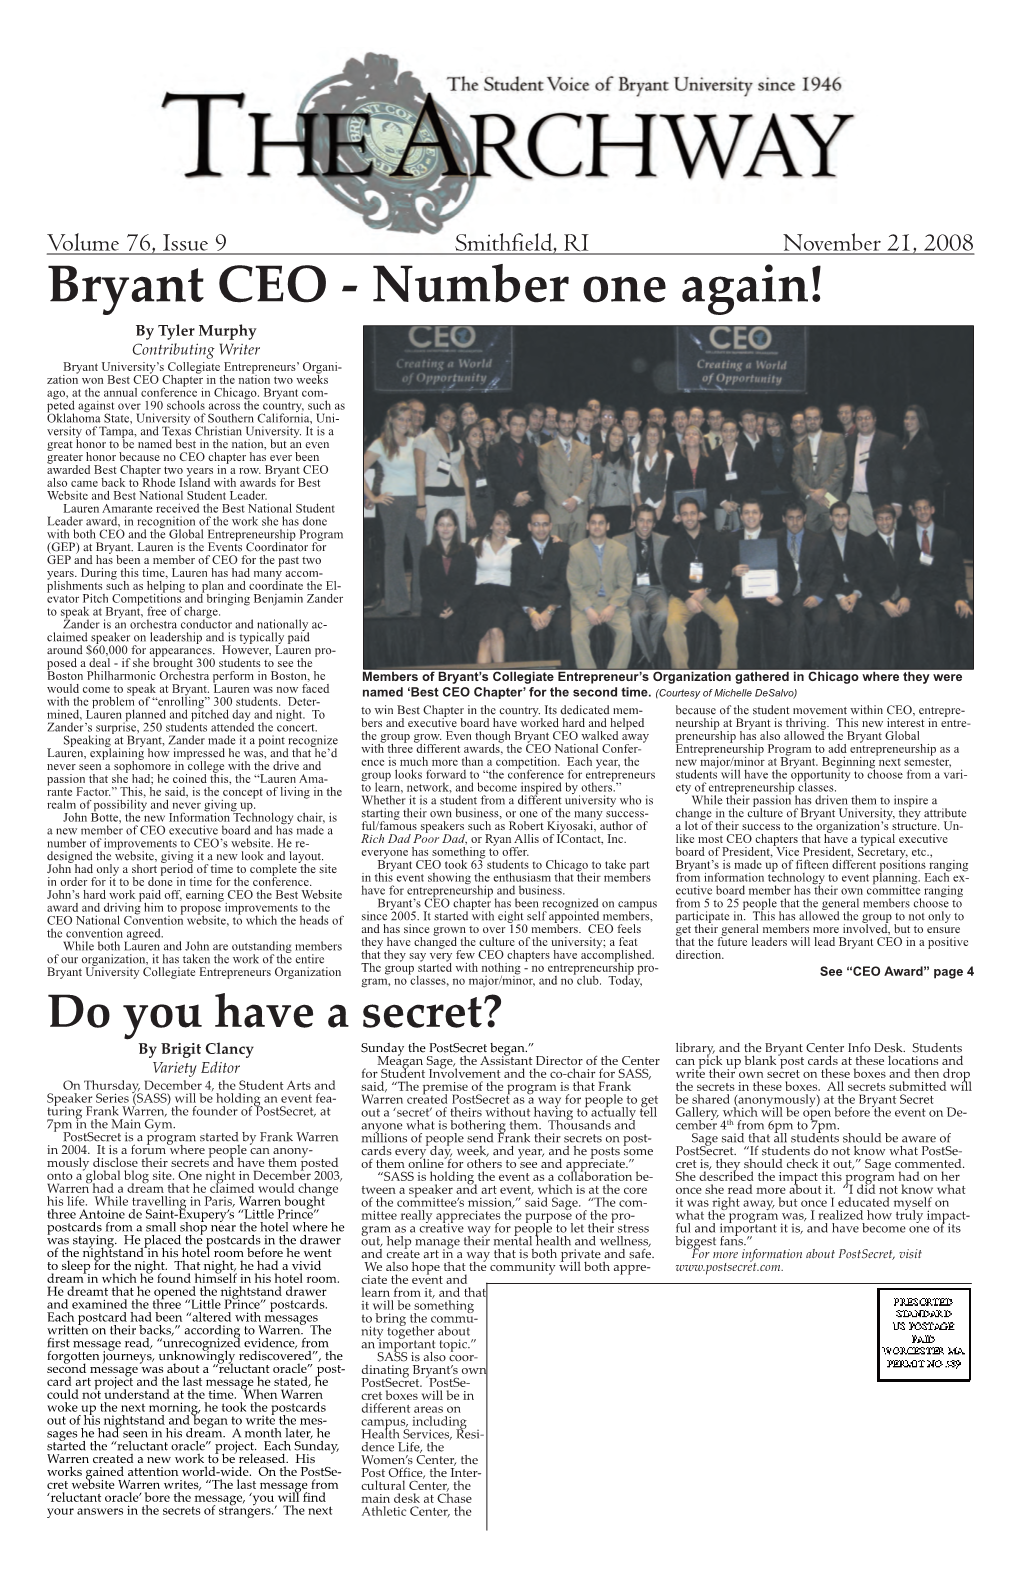 V. 76, Issue 9, November 21, 2008